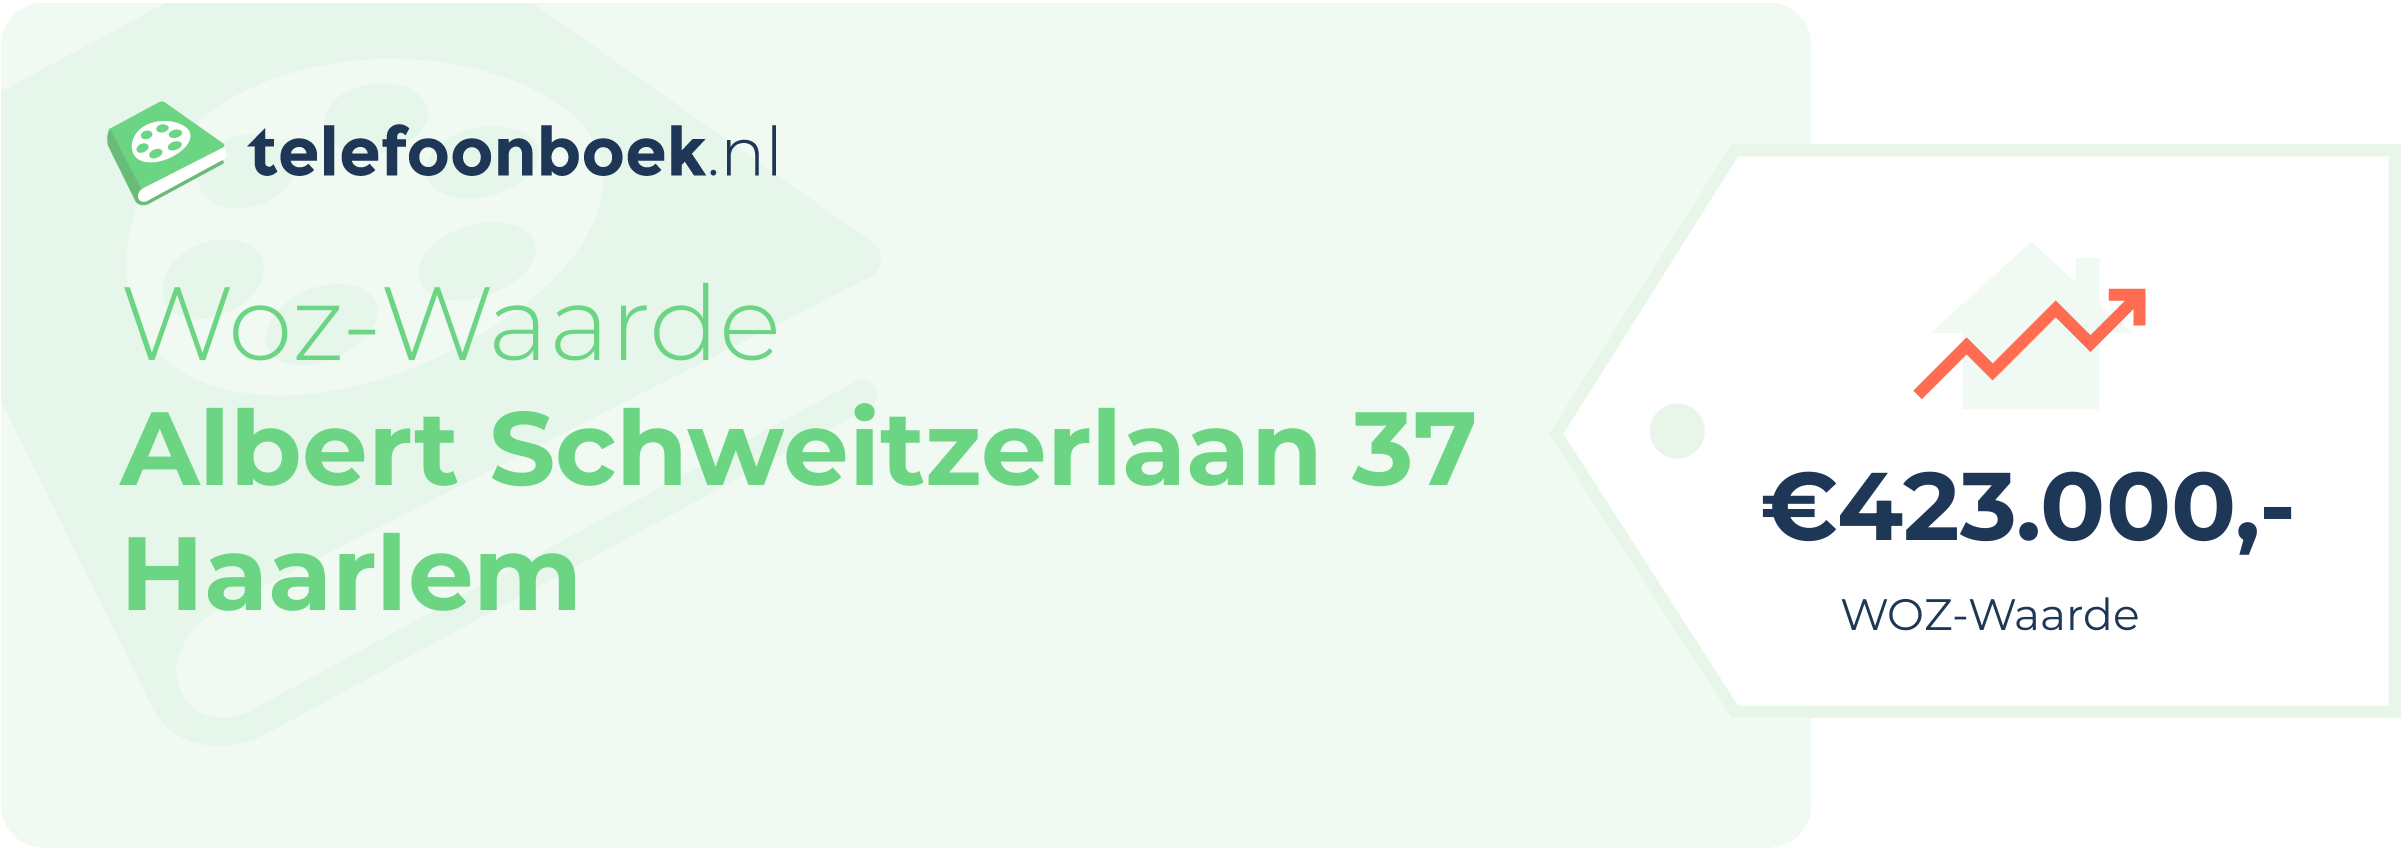 WOZ-waarde Albert Schweitzerlaan 37 Haarlem